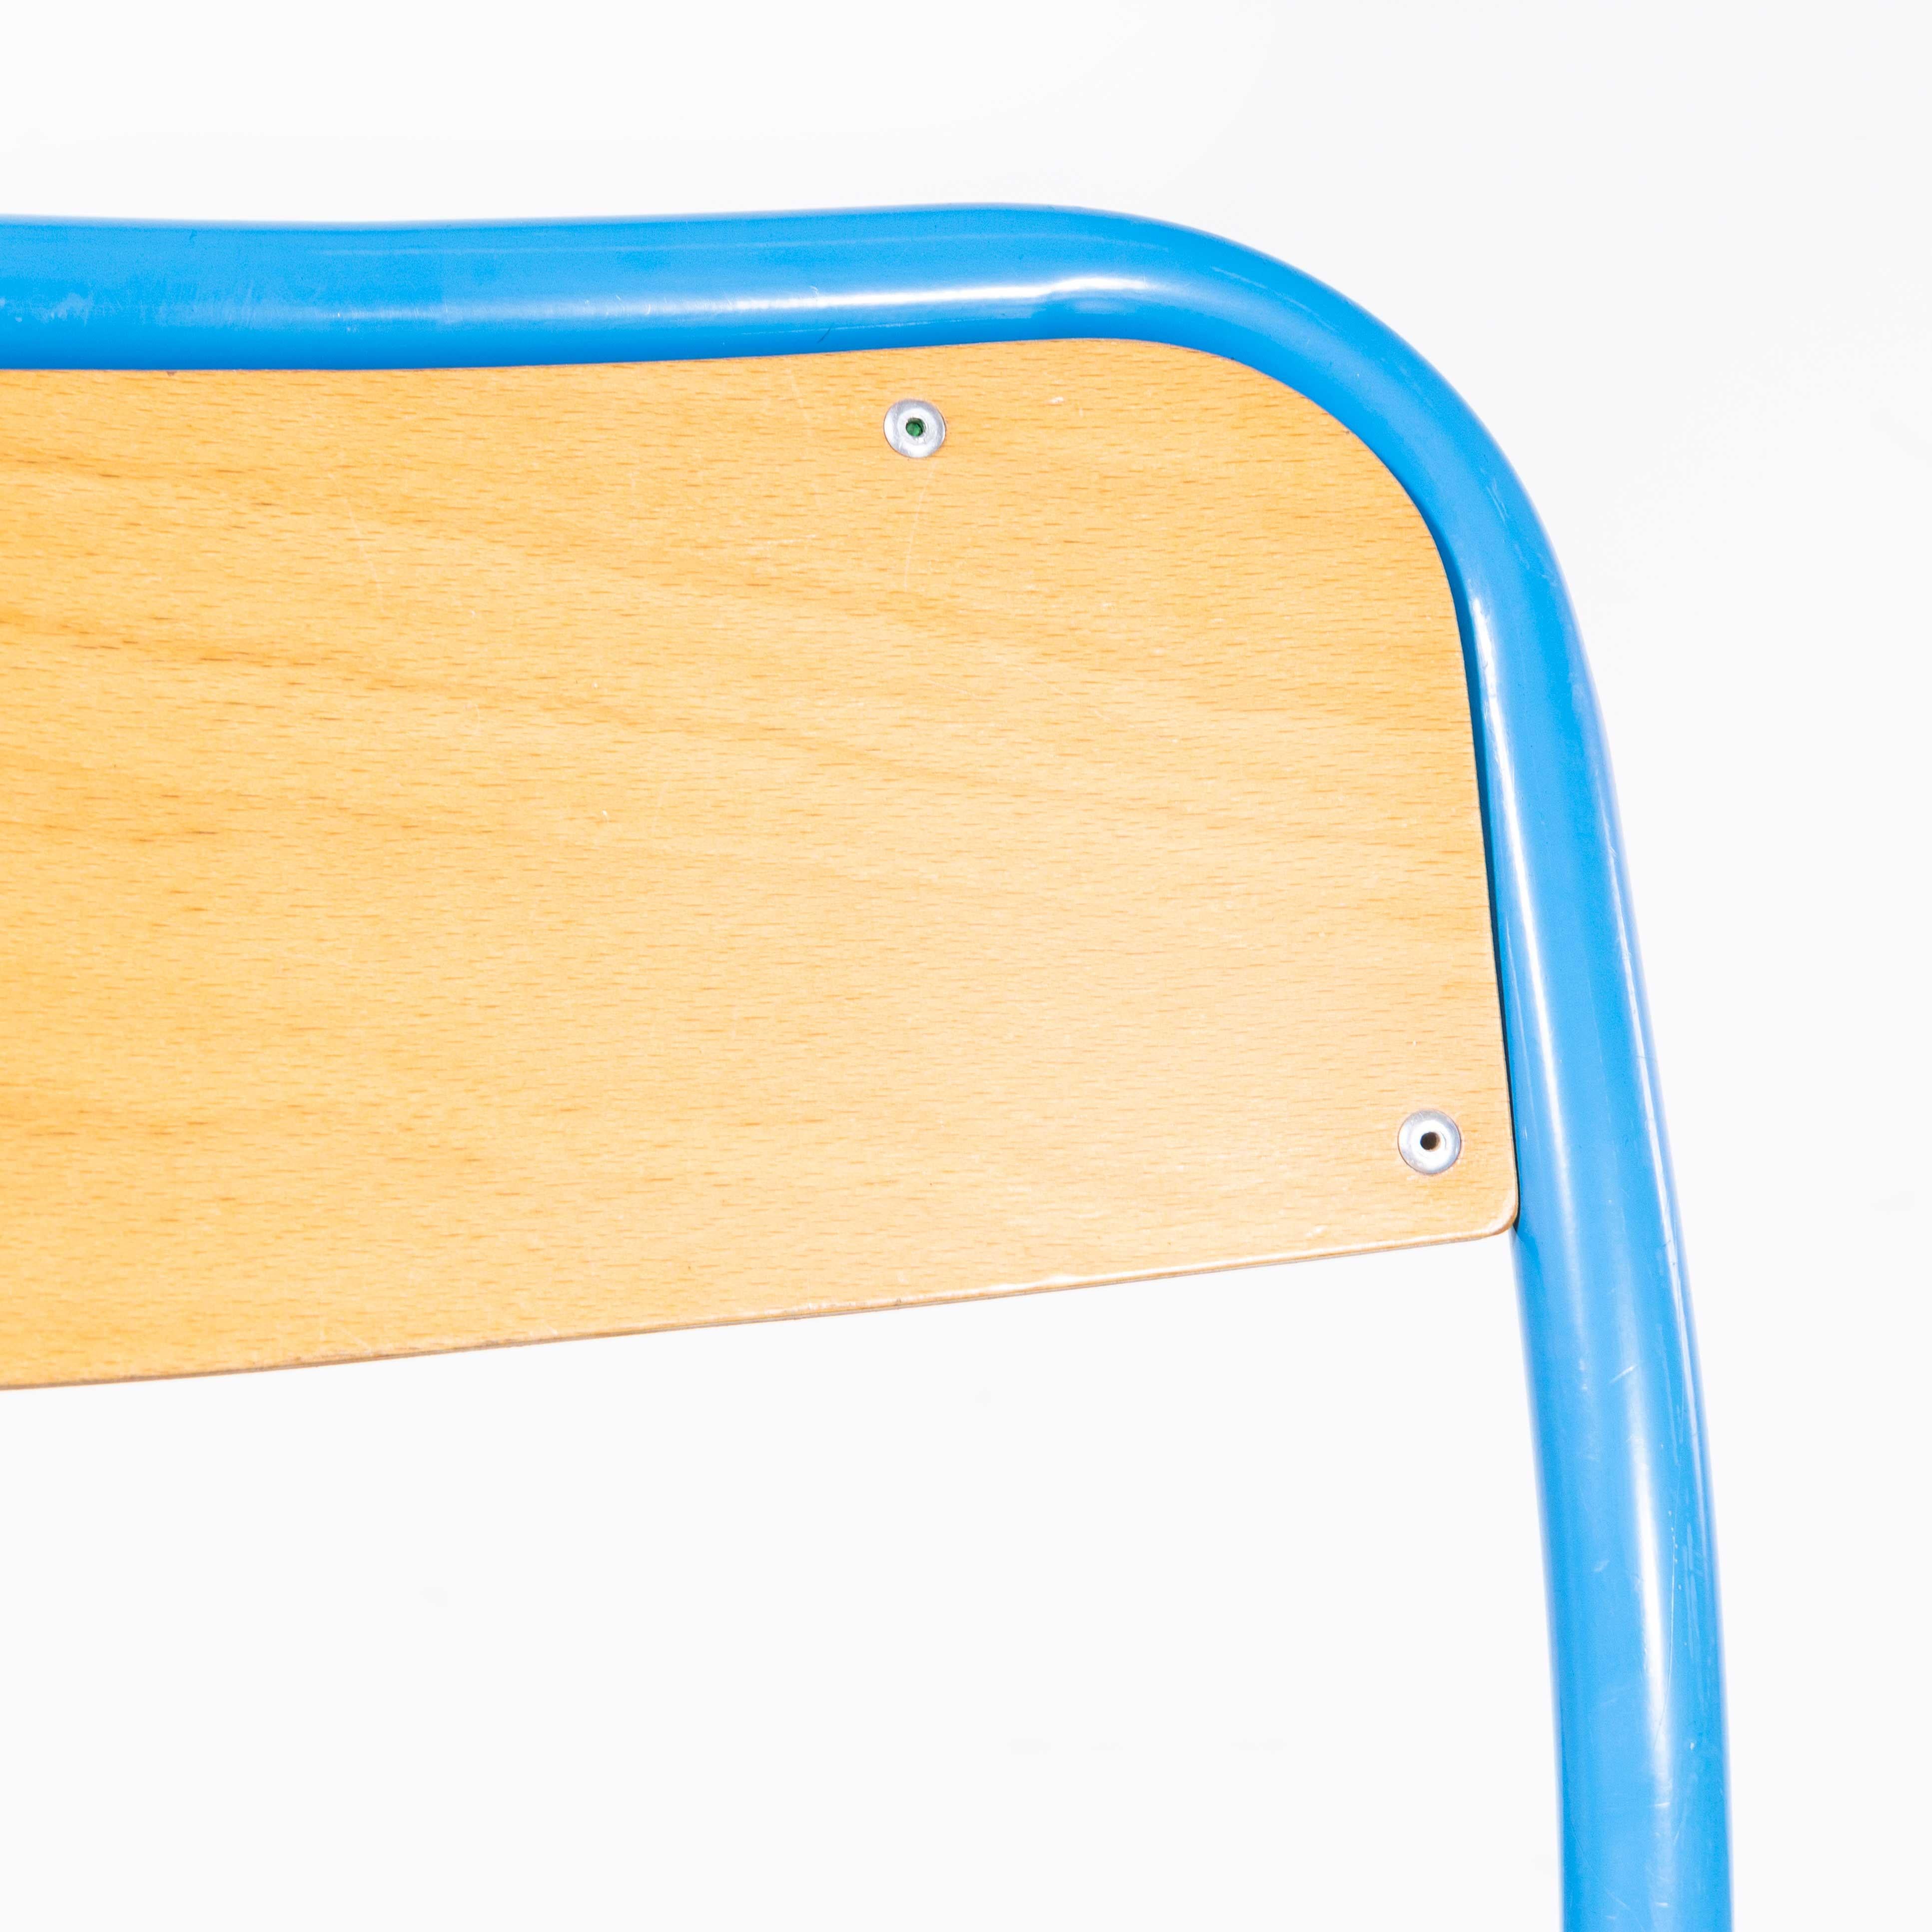 1960s French Mullca Stacking Children's Chairs - Set Of Nine (Chaises d'enfant empilables)
Chaises d'enfant empilables Mullca des années 1950 - Lot de neuf. Robert Muller et Gaston Cavaillon ont créé en 1947 la société qui a développé la chaise